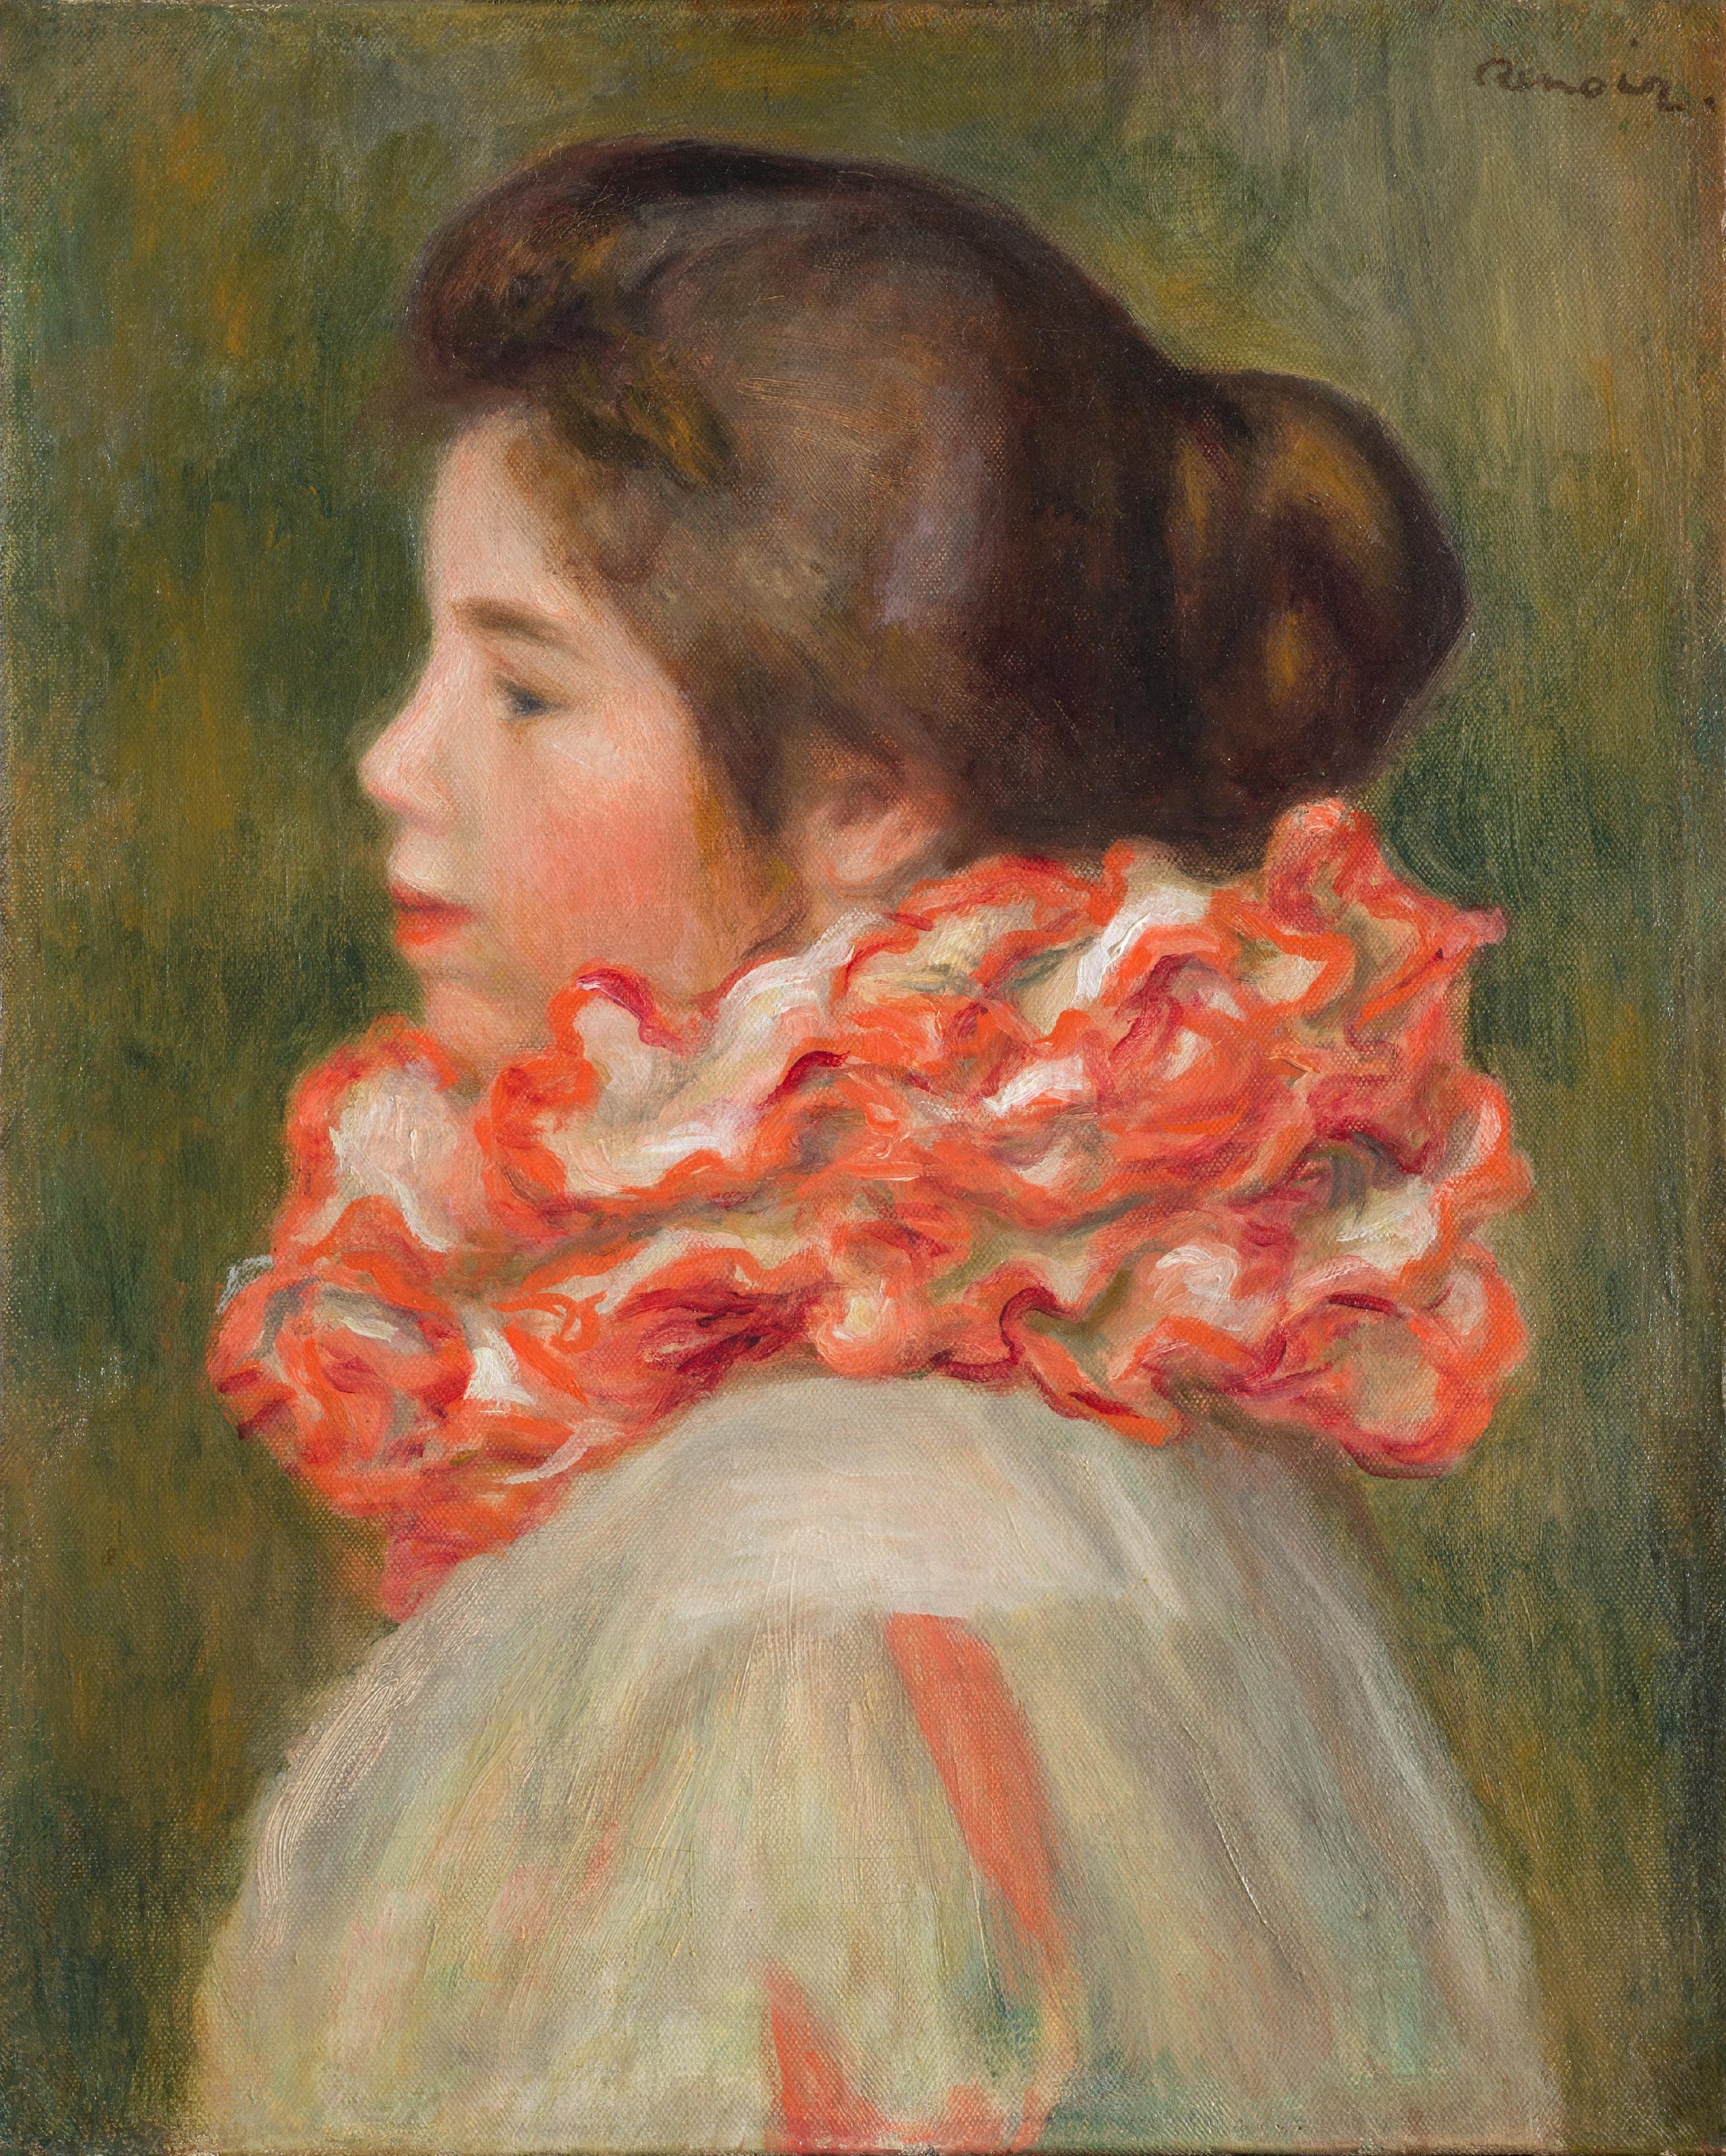 赤いひだ襟を着けた少女 by Pierre-Auguste Renoir - 1896年頃 - 41.3 x 33.3 cm 